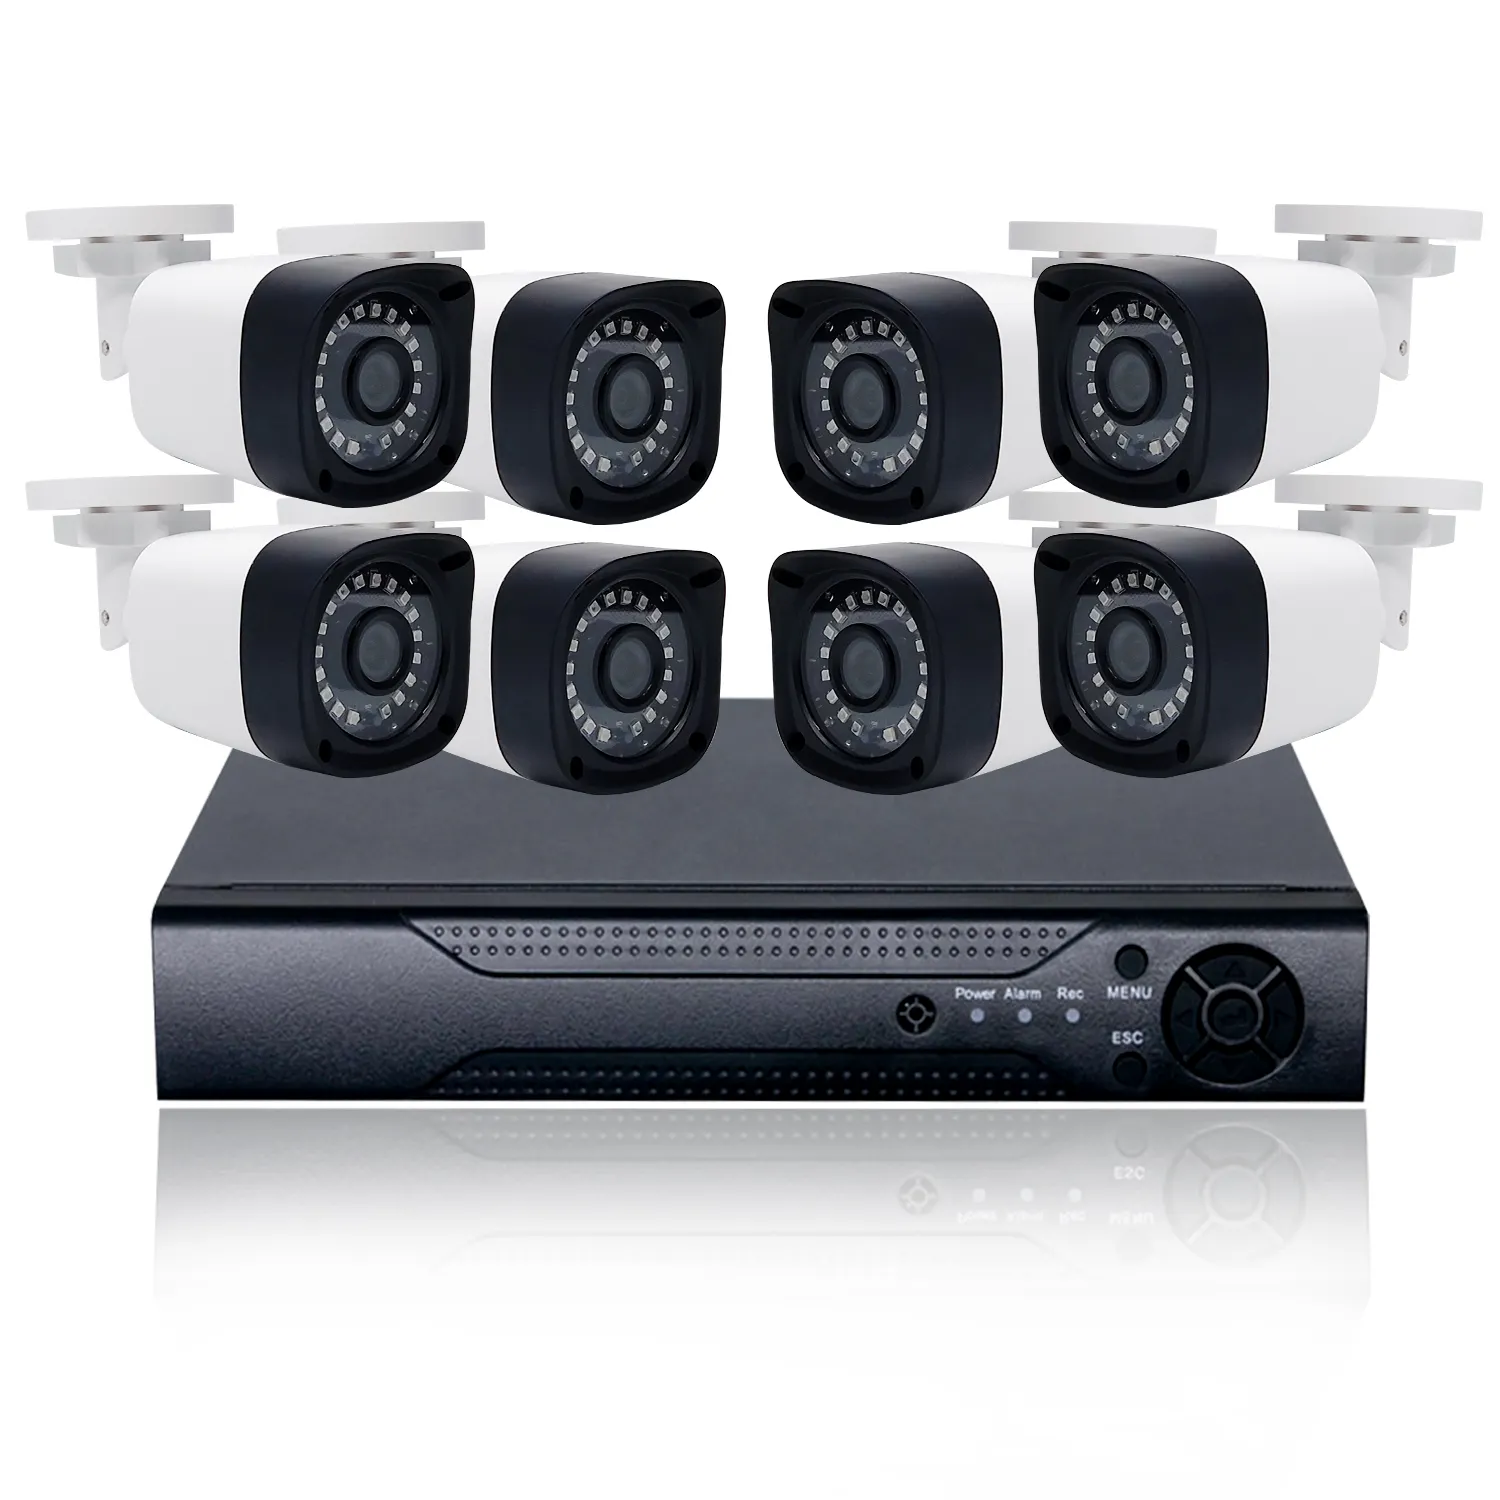 Weecuu-sistema de vigilancia DVR con 8 canales, cámara de seguridad analógica AHD, 2MP, 5MP, 8MP